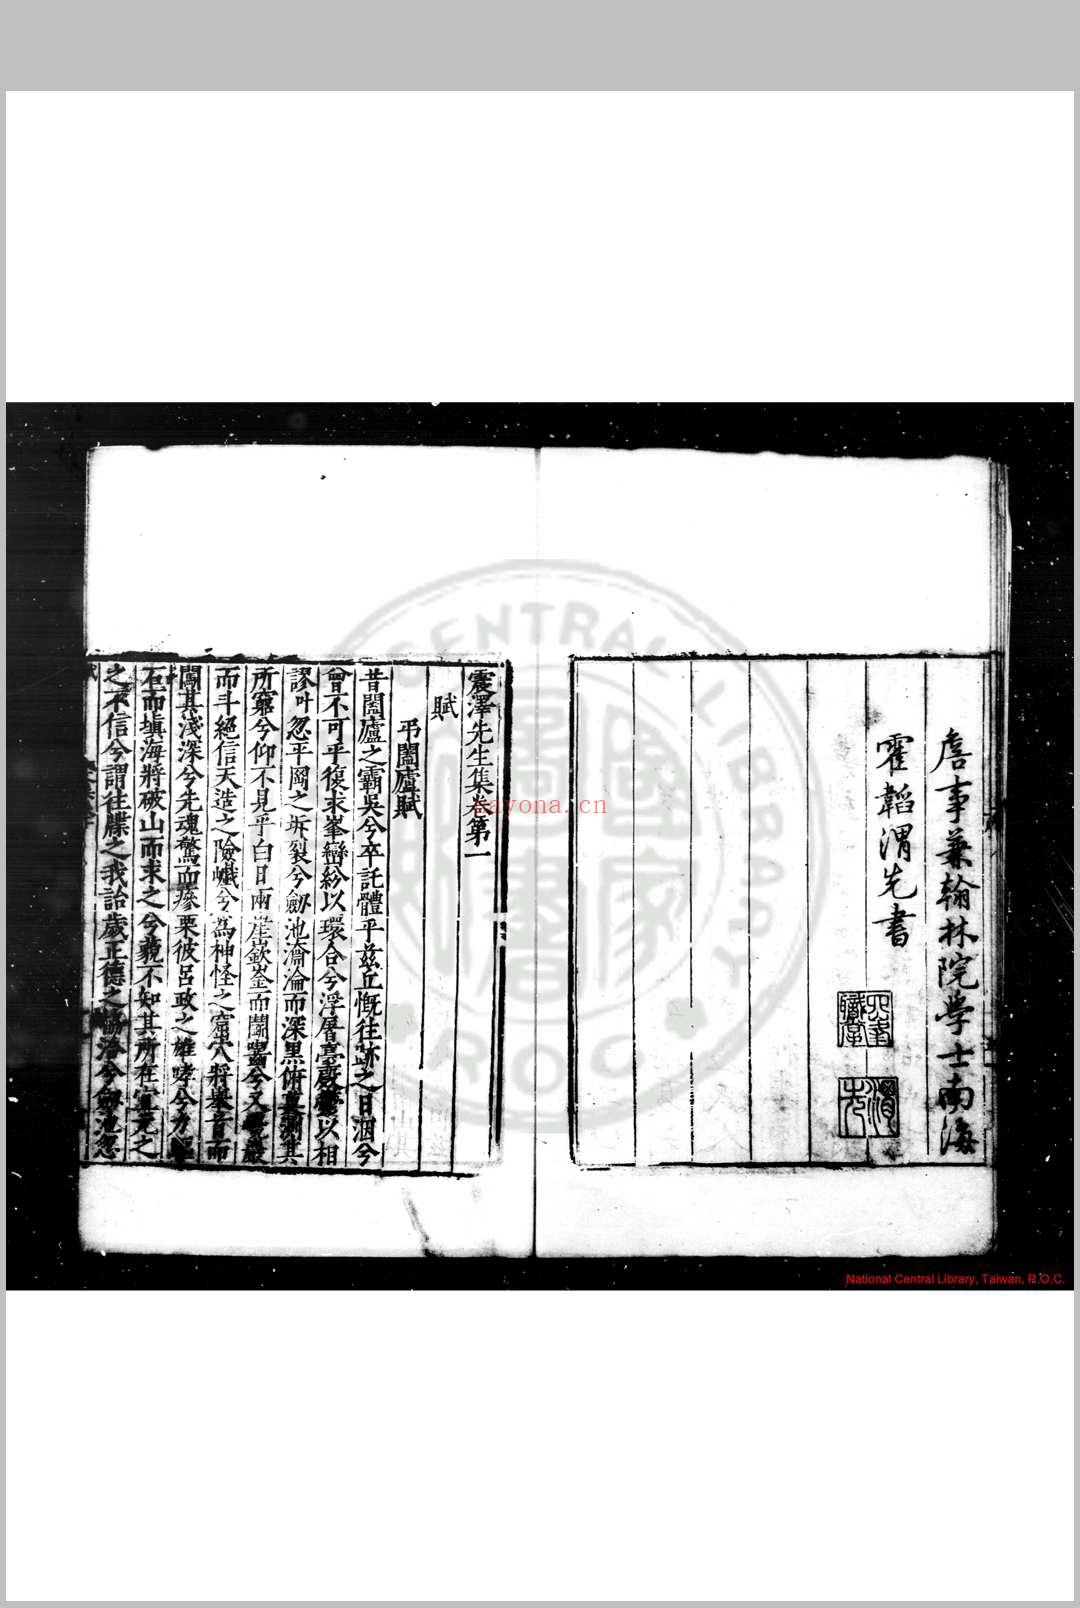 震泽先生集 (明)王鏊撰 明嘉靖间(1522-1566)刊本